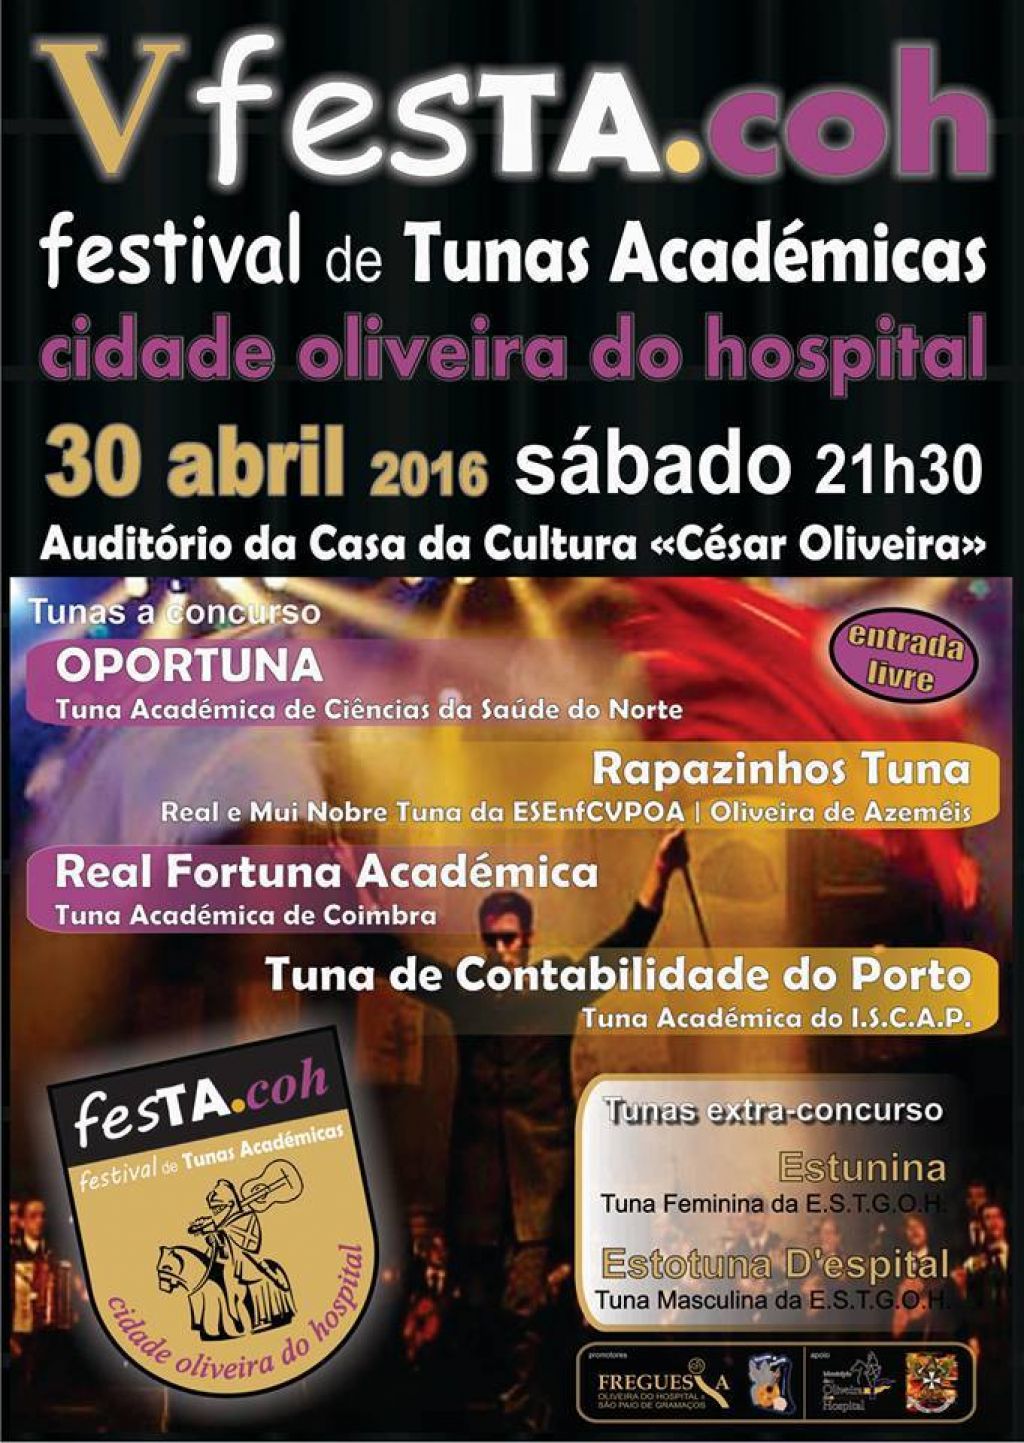 V fesTA.coh - Festival de Tunas Académicas Cidade de Oliveira do Hospital